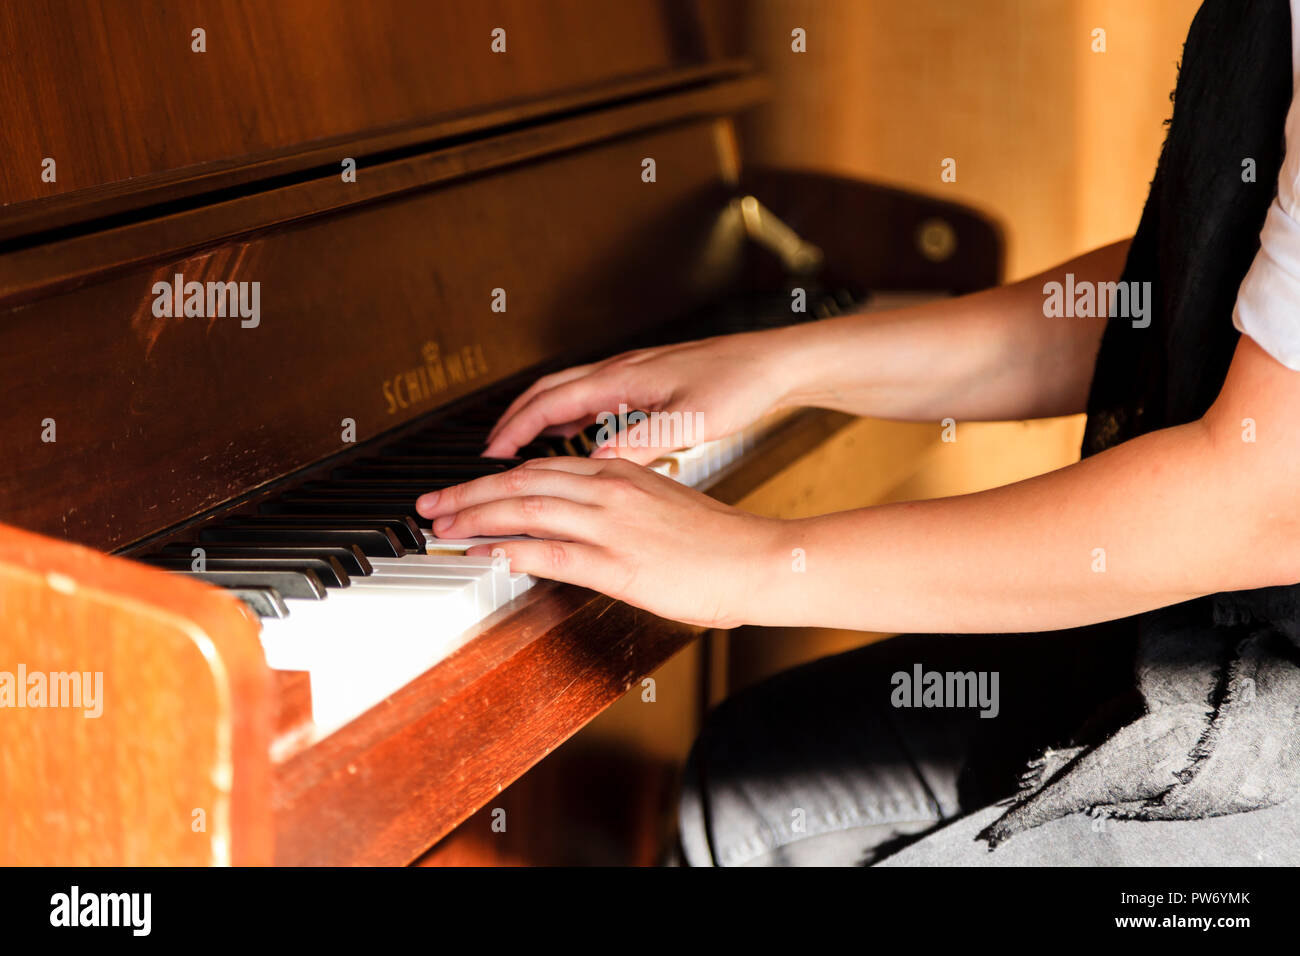 Les bras d'une femme pendant qu'elle joue du piano Photo Stock - Alamy